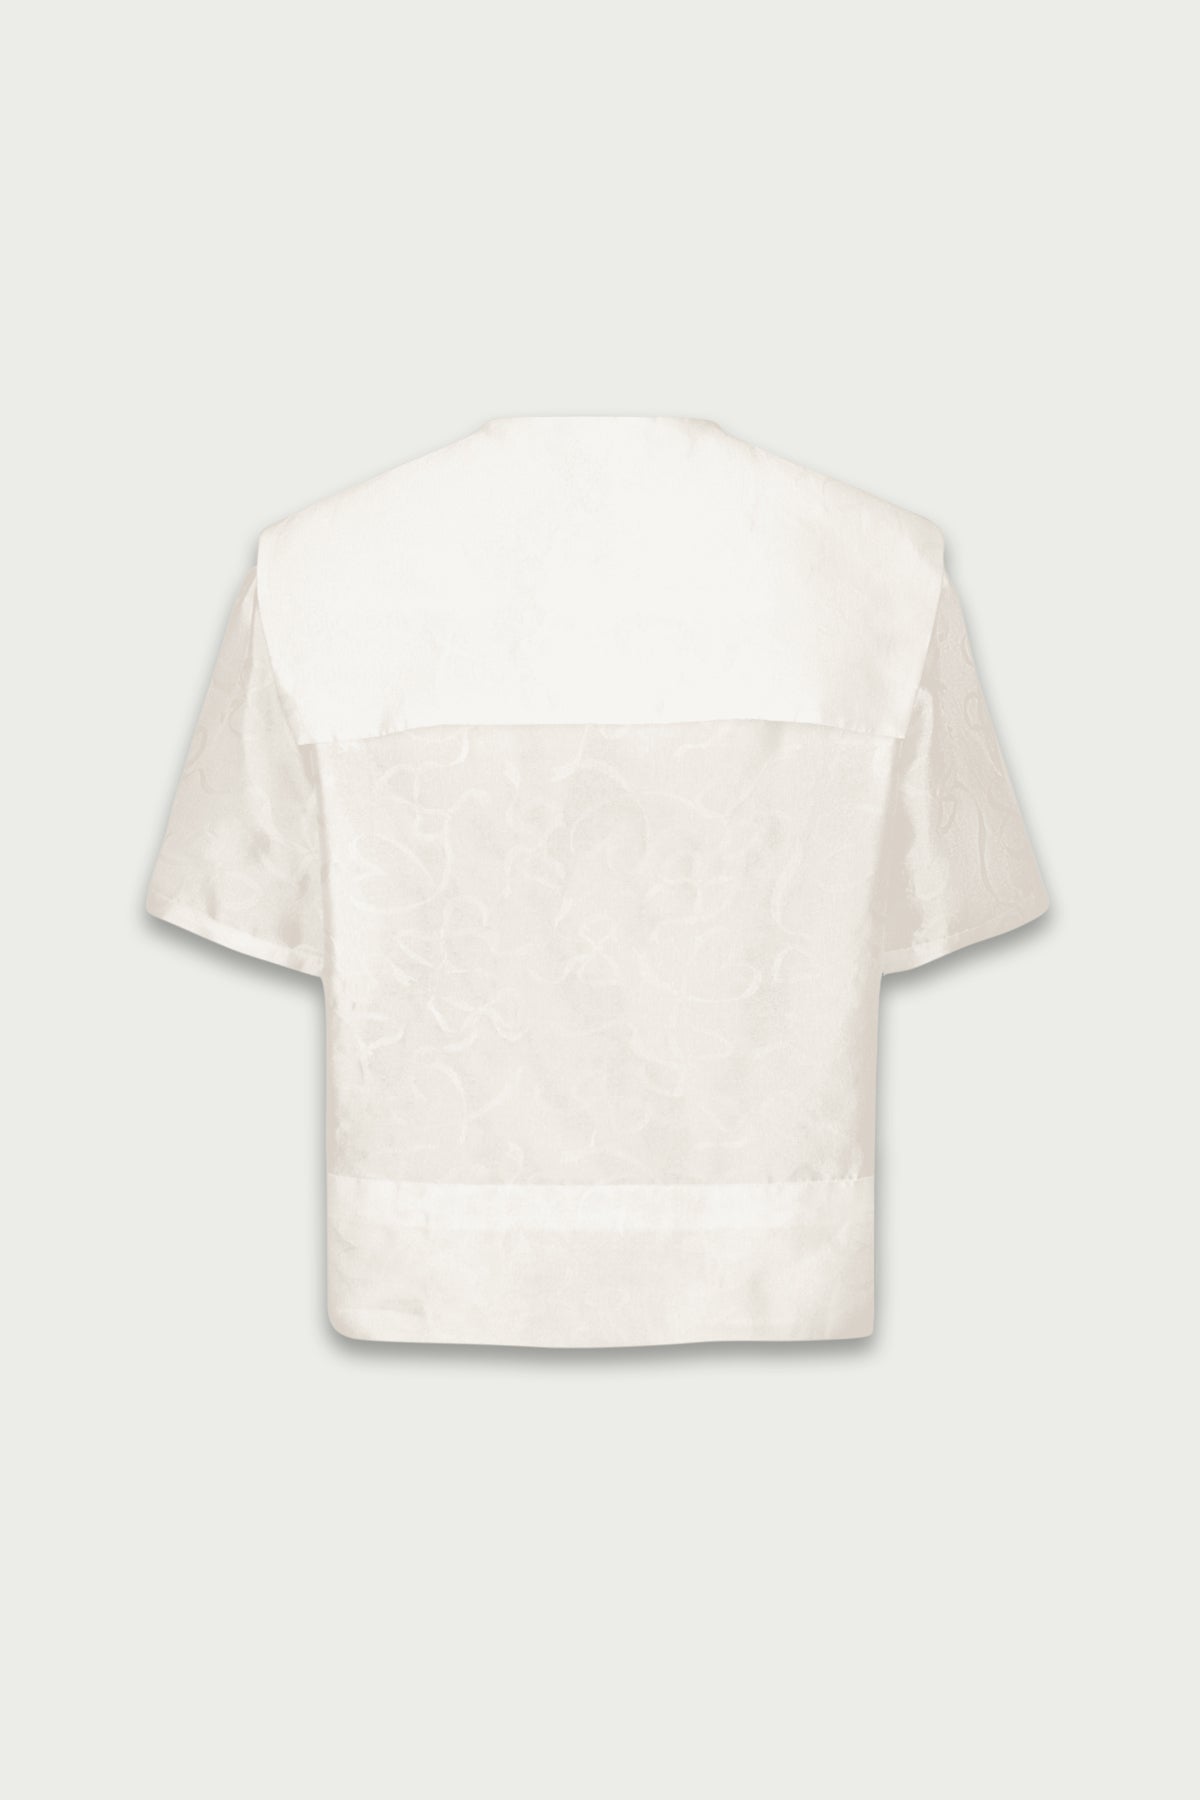 Mukzin | Lapel Pearls White Chiffon Shirt - 囍XI